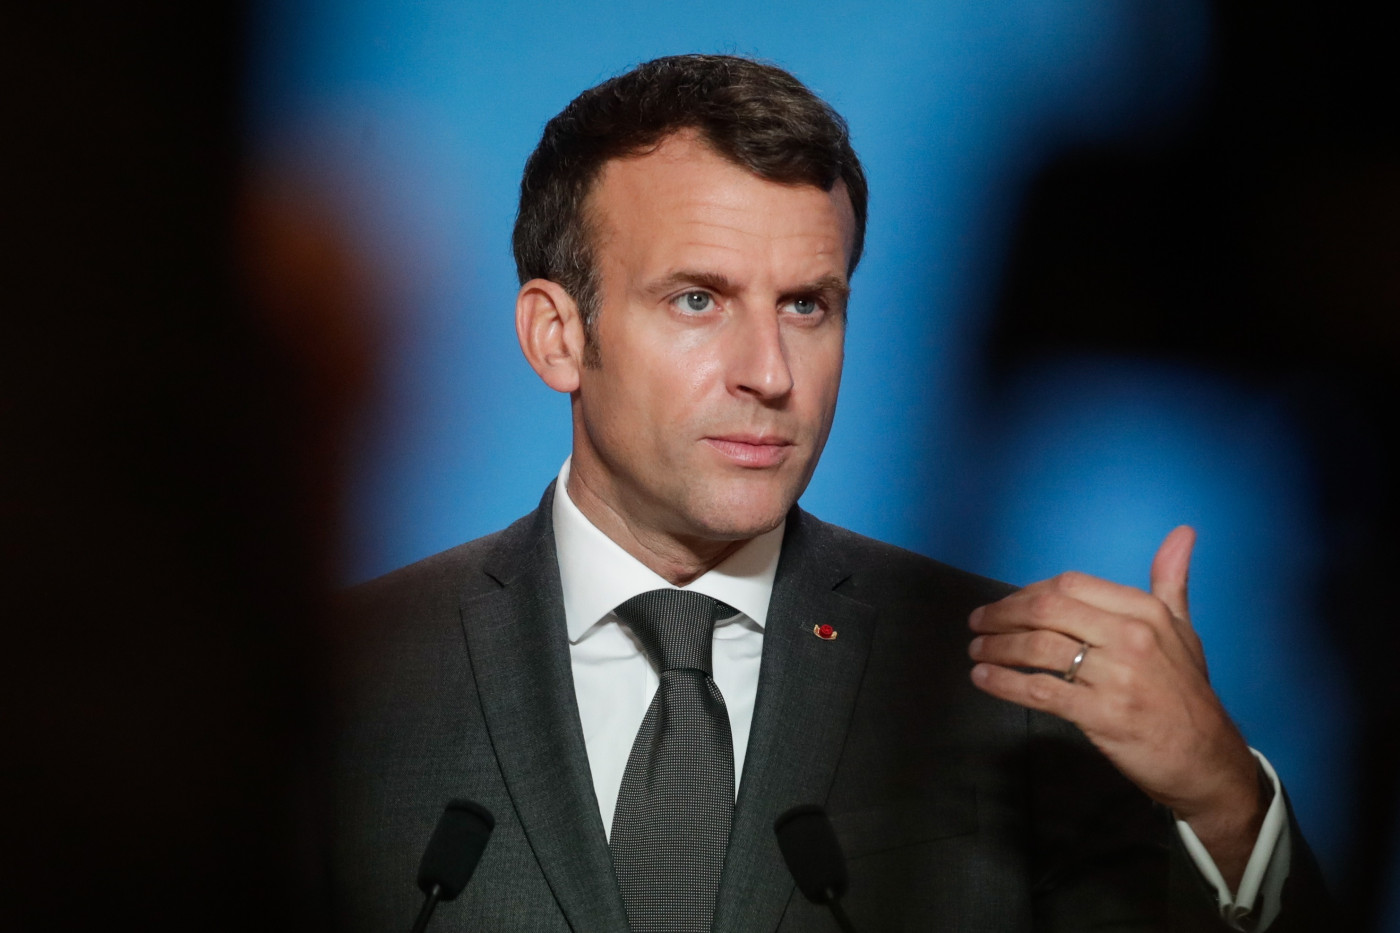 O presidente da França Emmanuel Macron durante pronunciamento